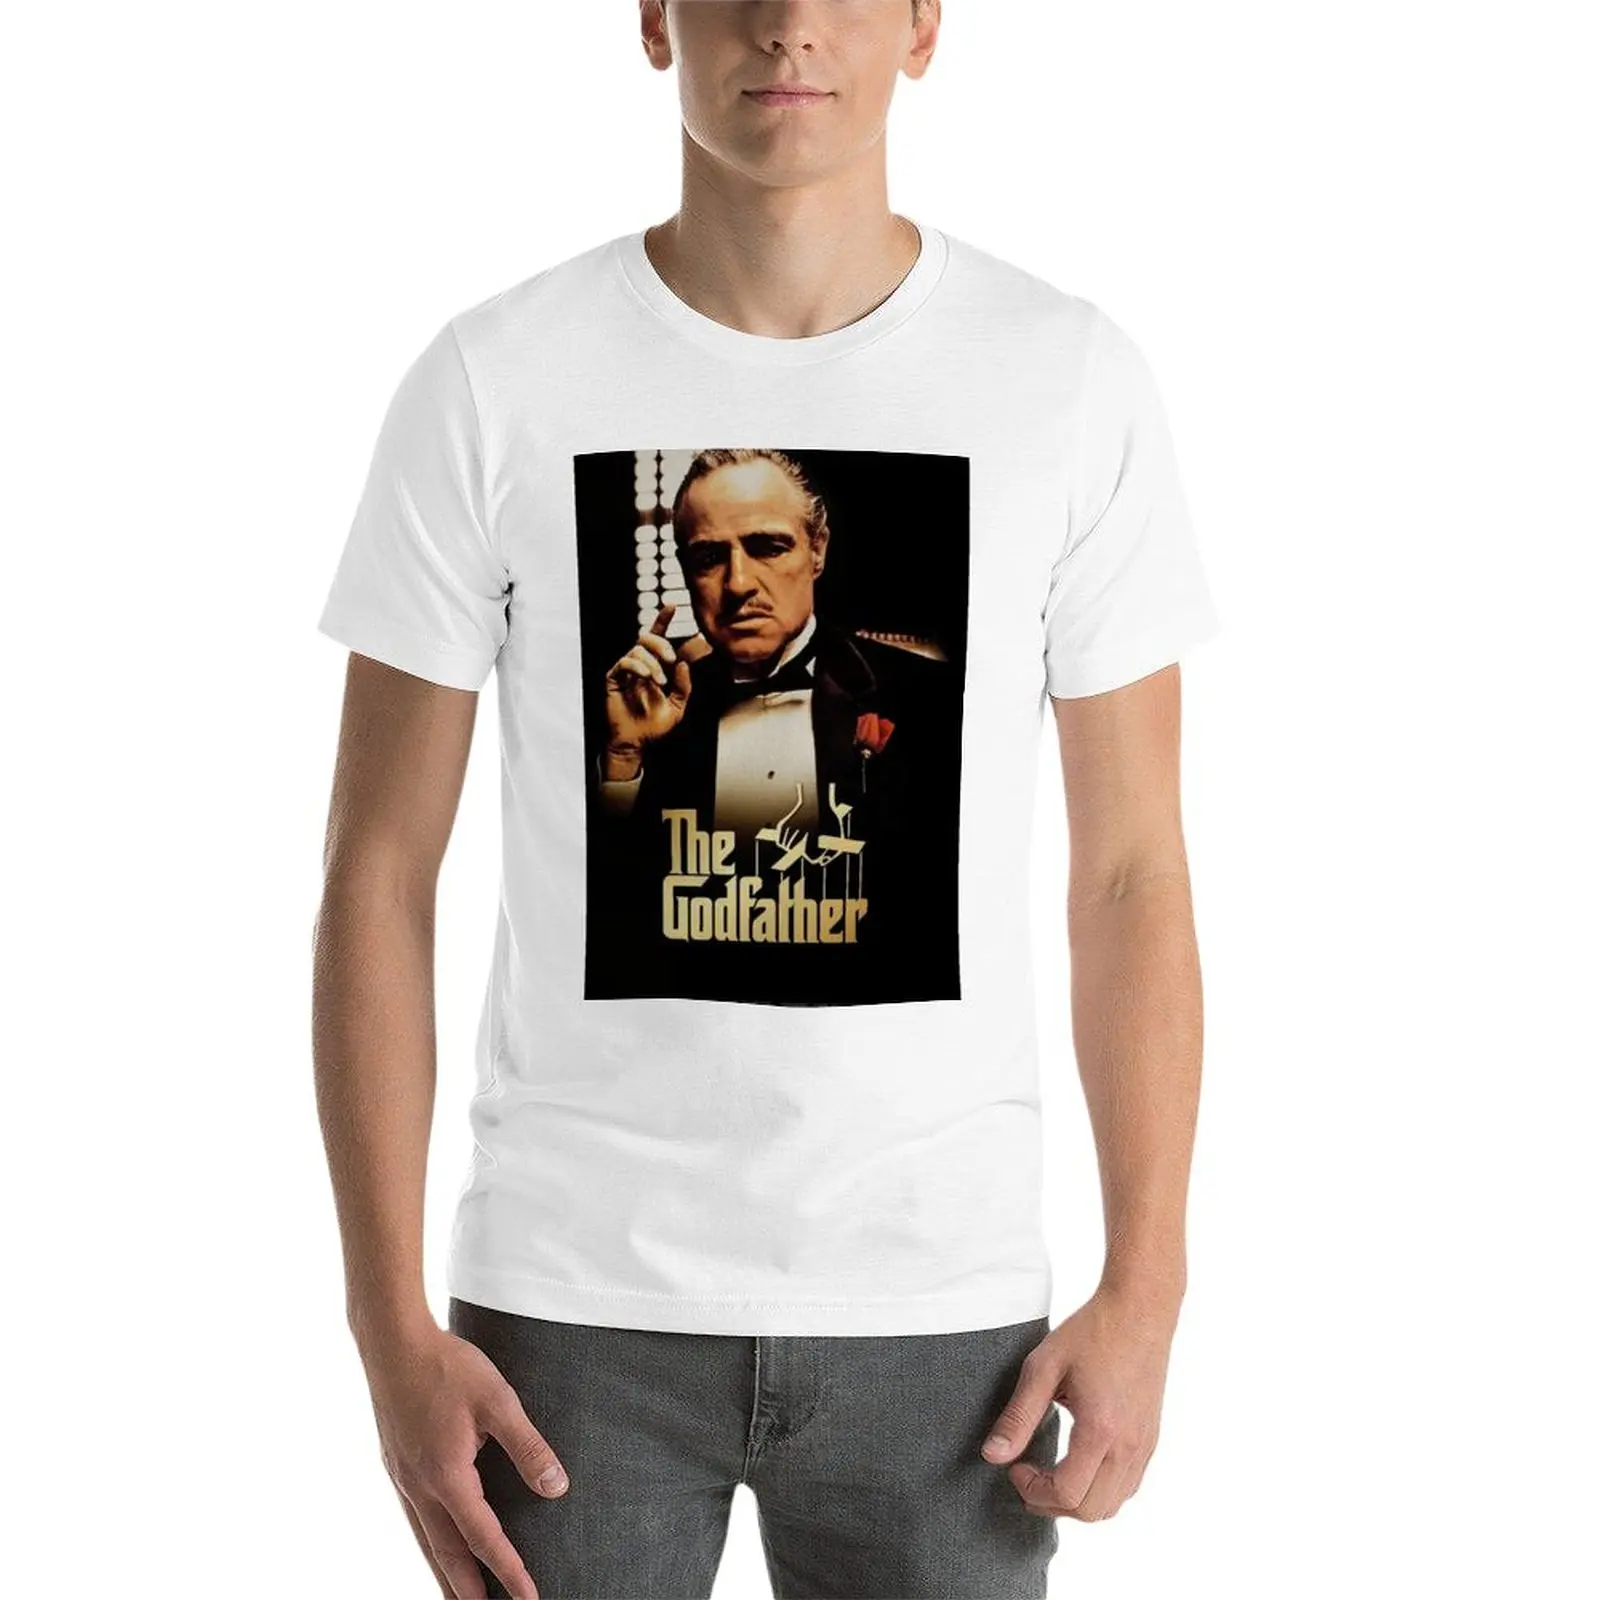 Новая футболка The Godfather, футболки, пустые футболки, возвышенная футболка, футболка для мужчин Изображение 2